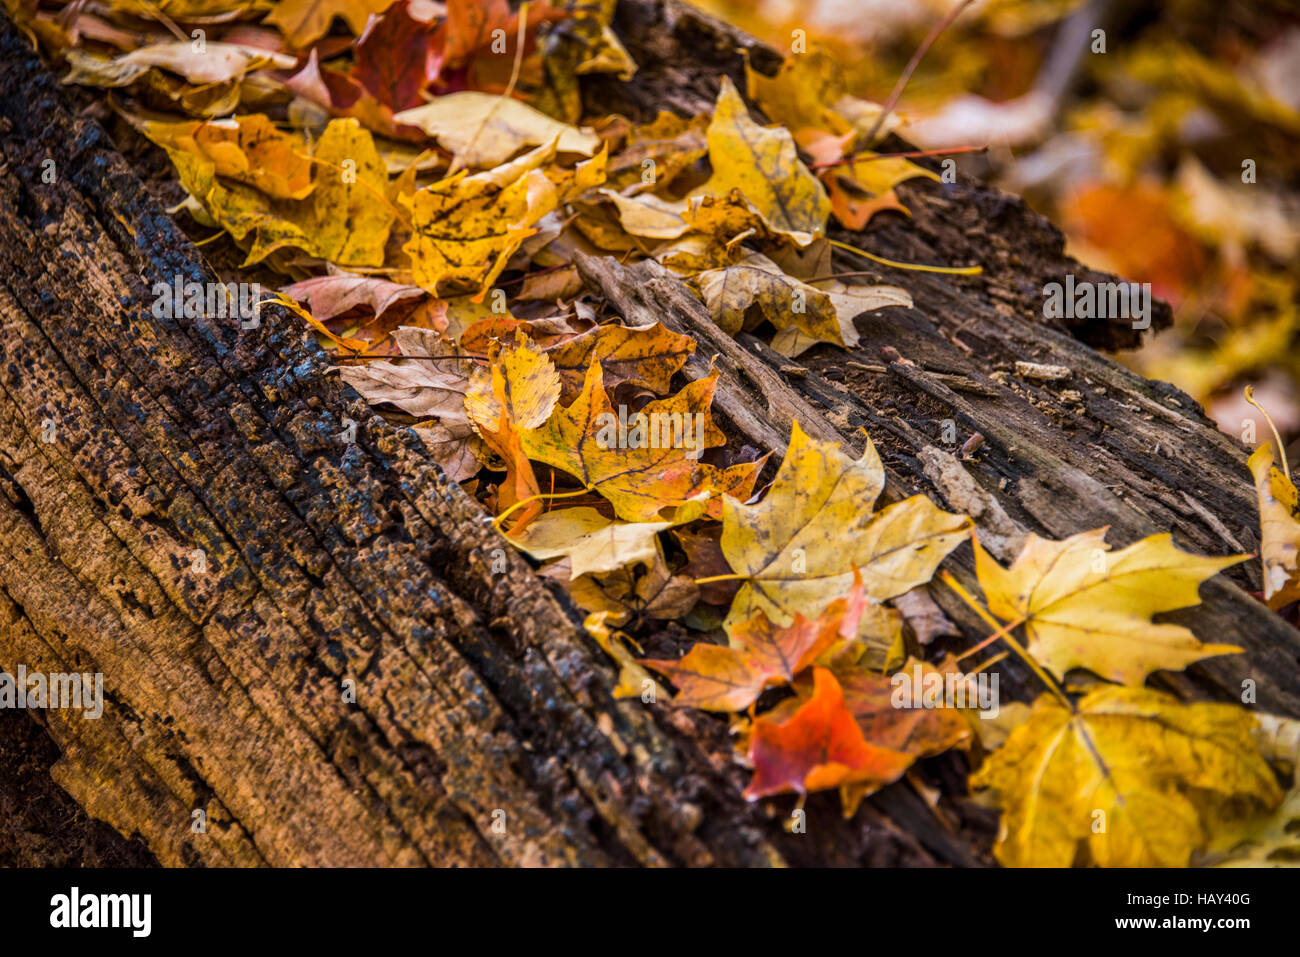 Herbst Look mit bunten Blättern der amerikanischen Wald Bäume liegen auf alten Holz. Herbst Konzept Stockfoto